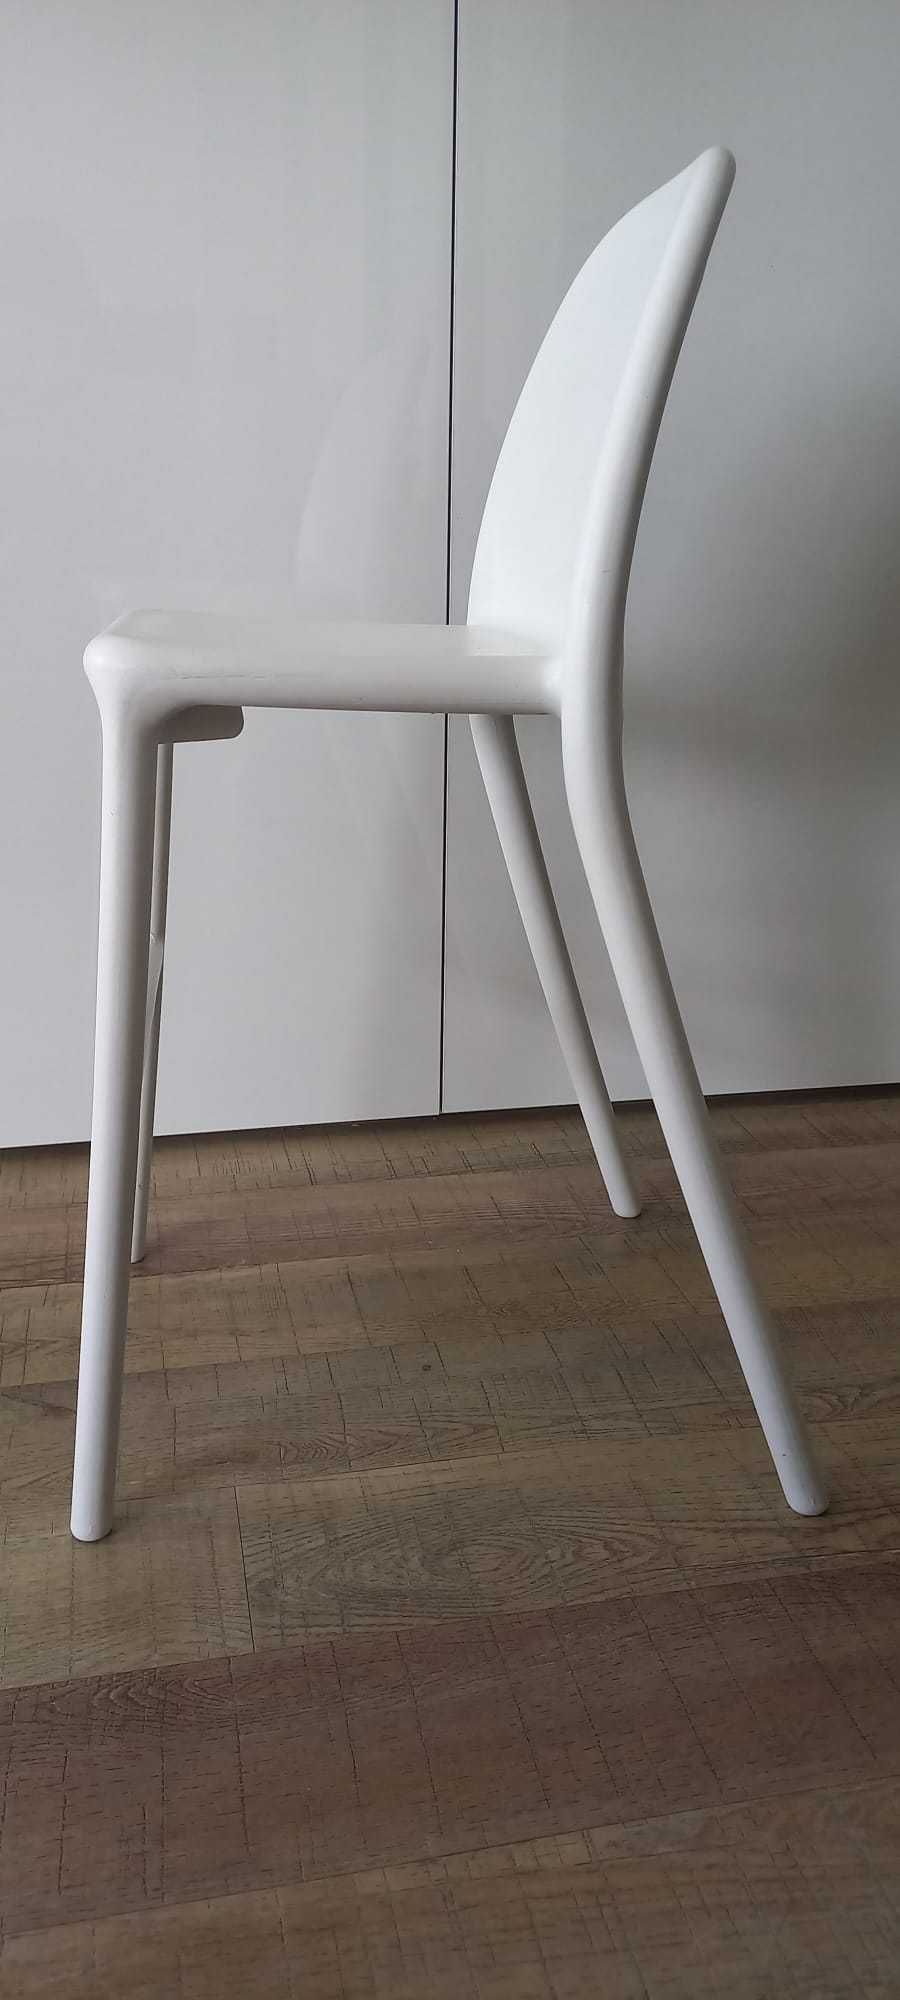 Cadeira alta de criança IKEA Urban